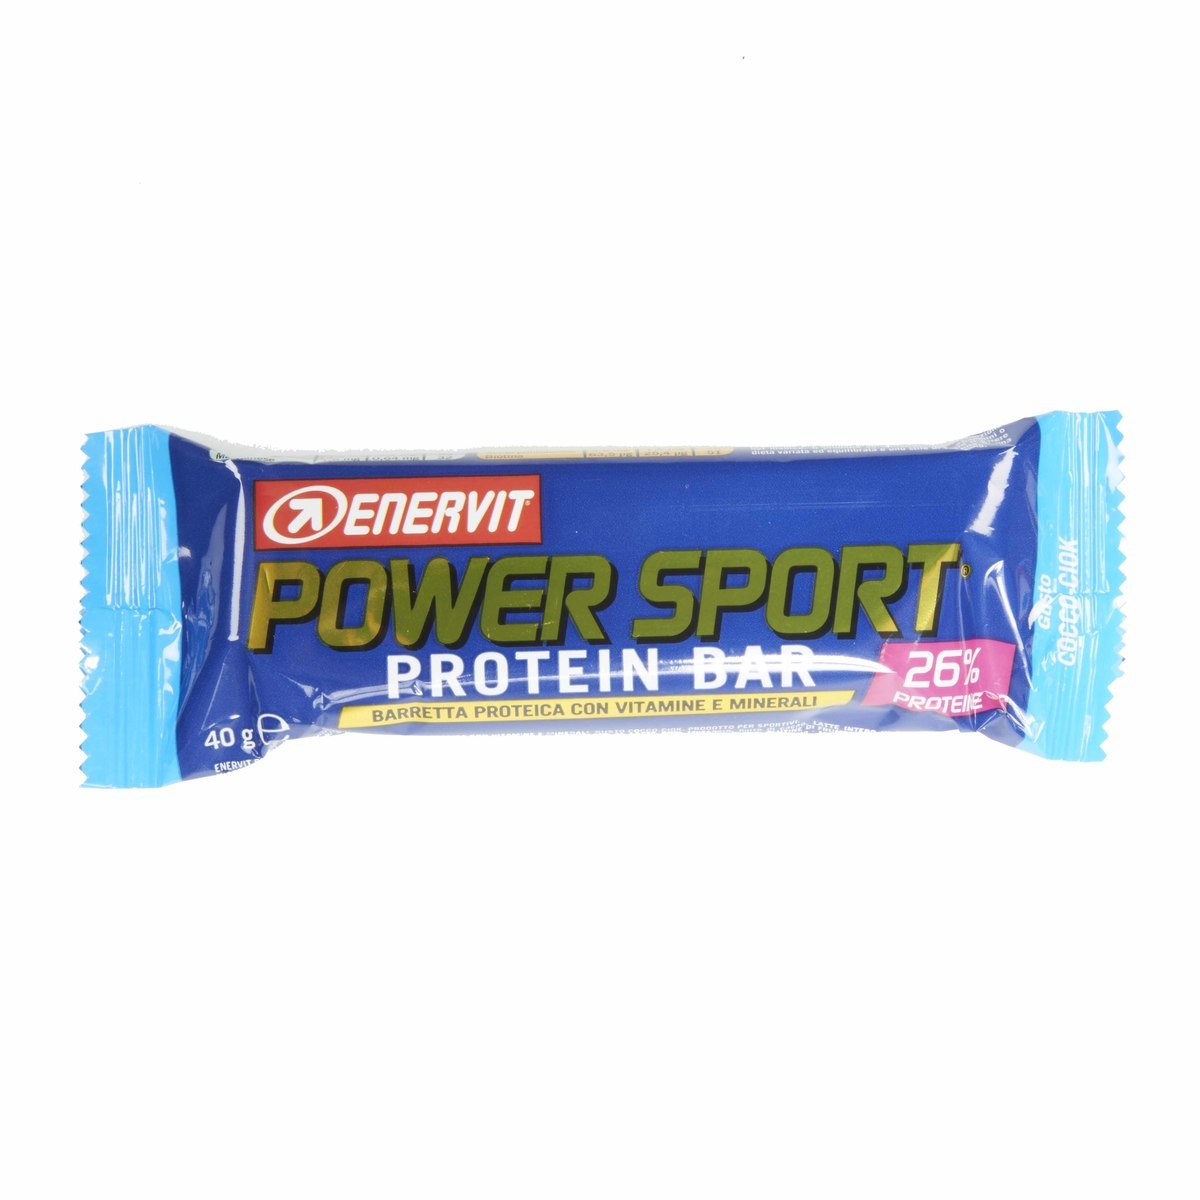 Barretta Power Sport